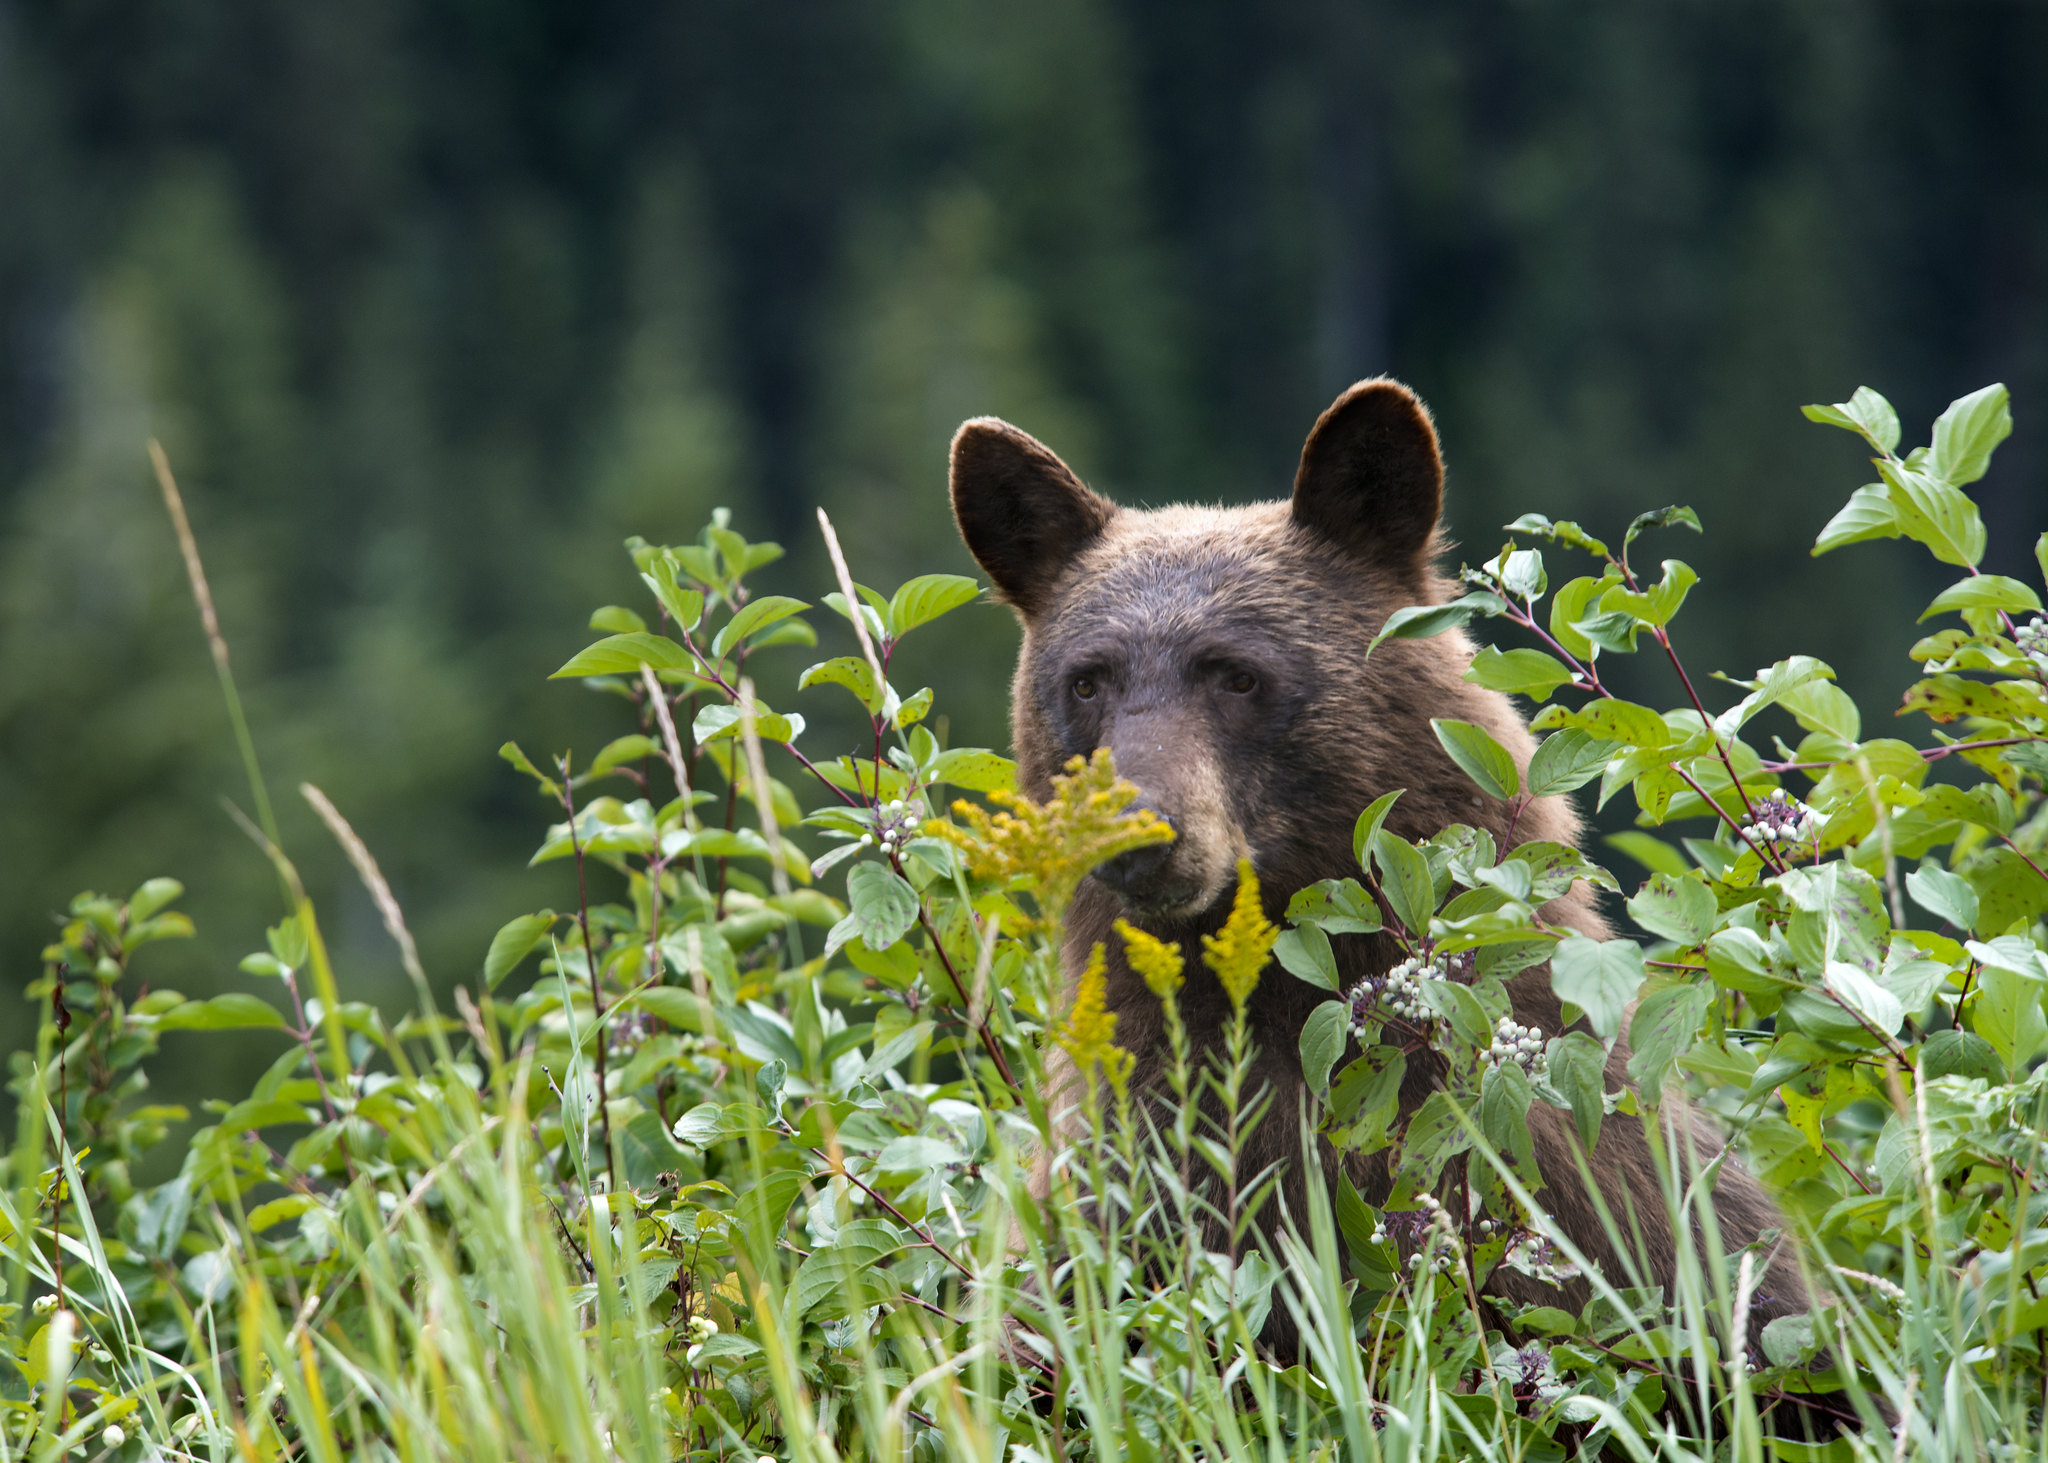 A bear looking through bushes